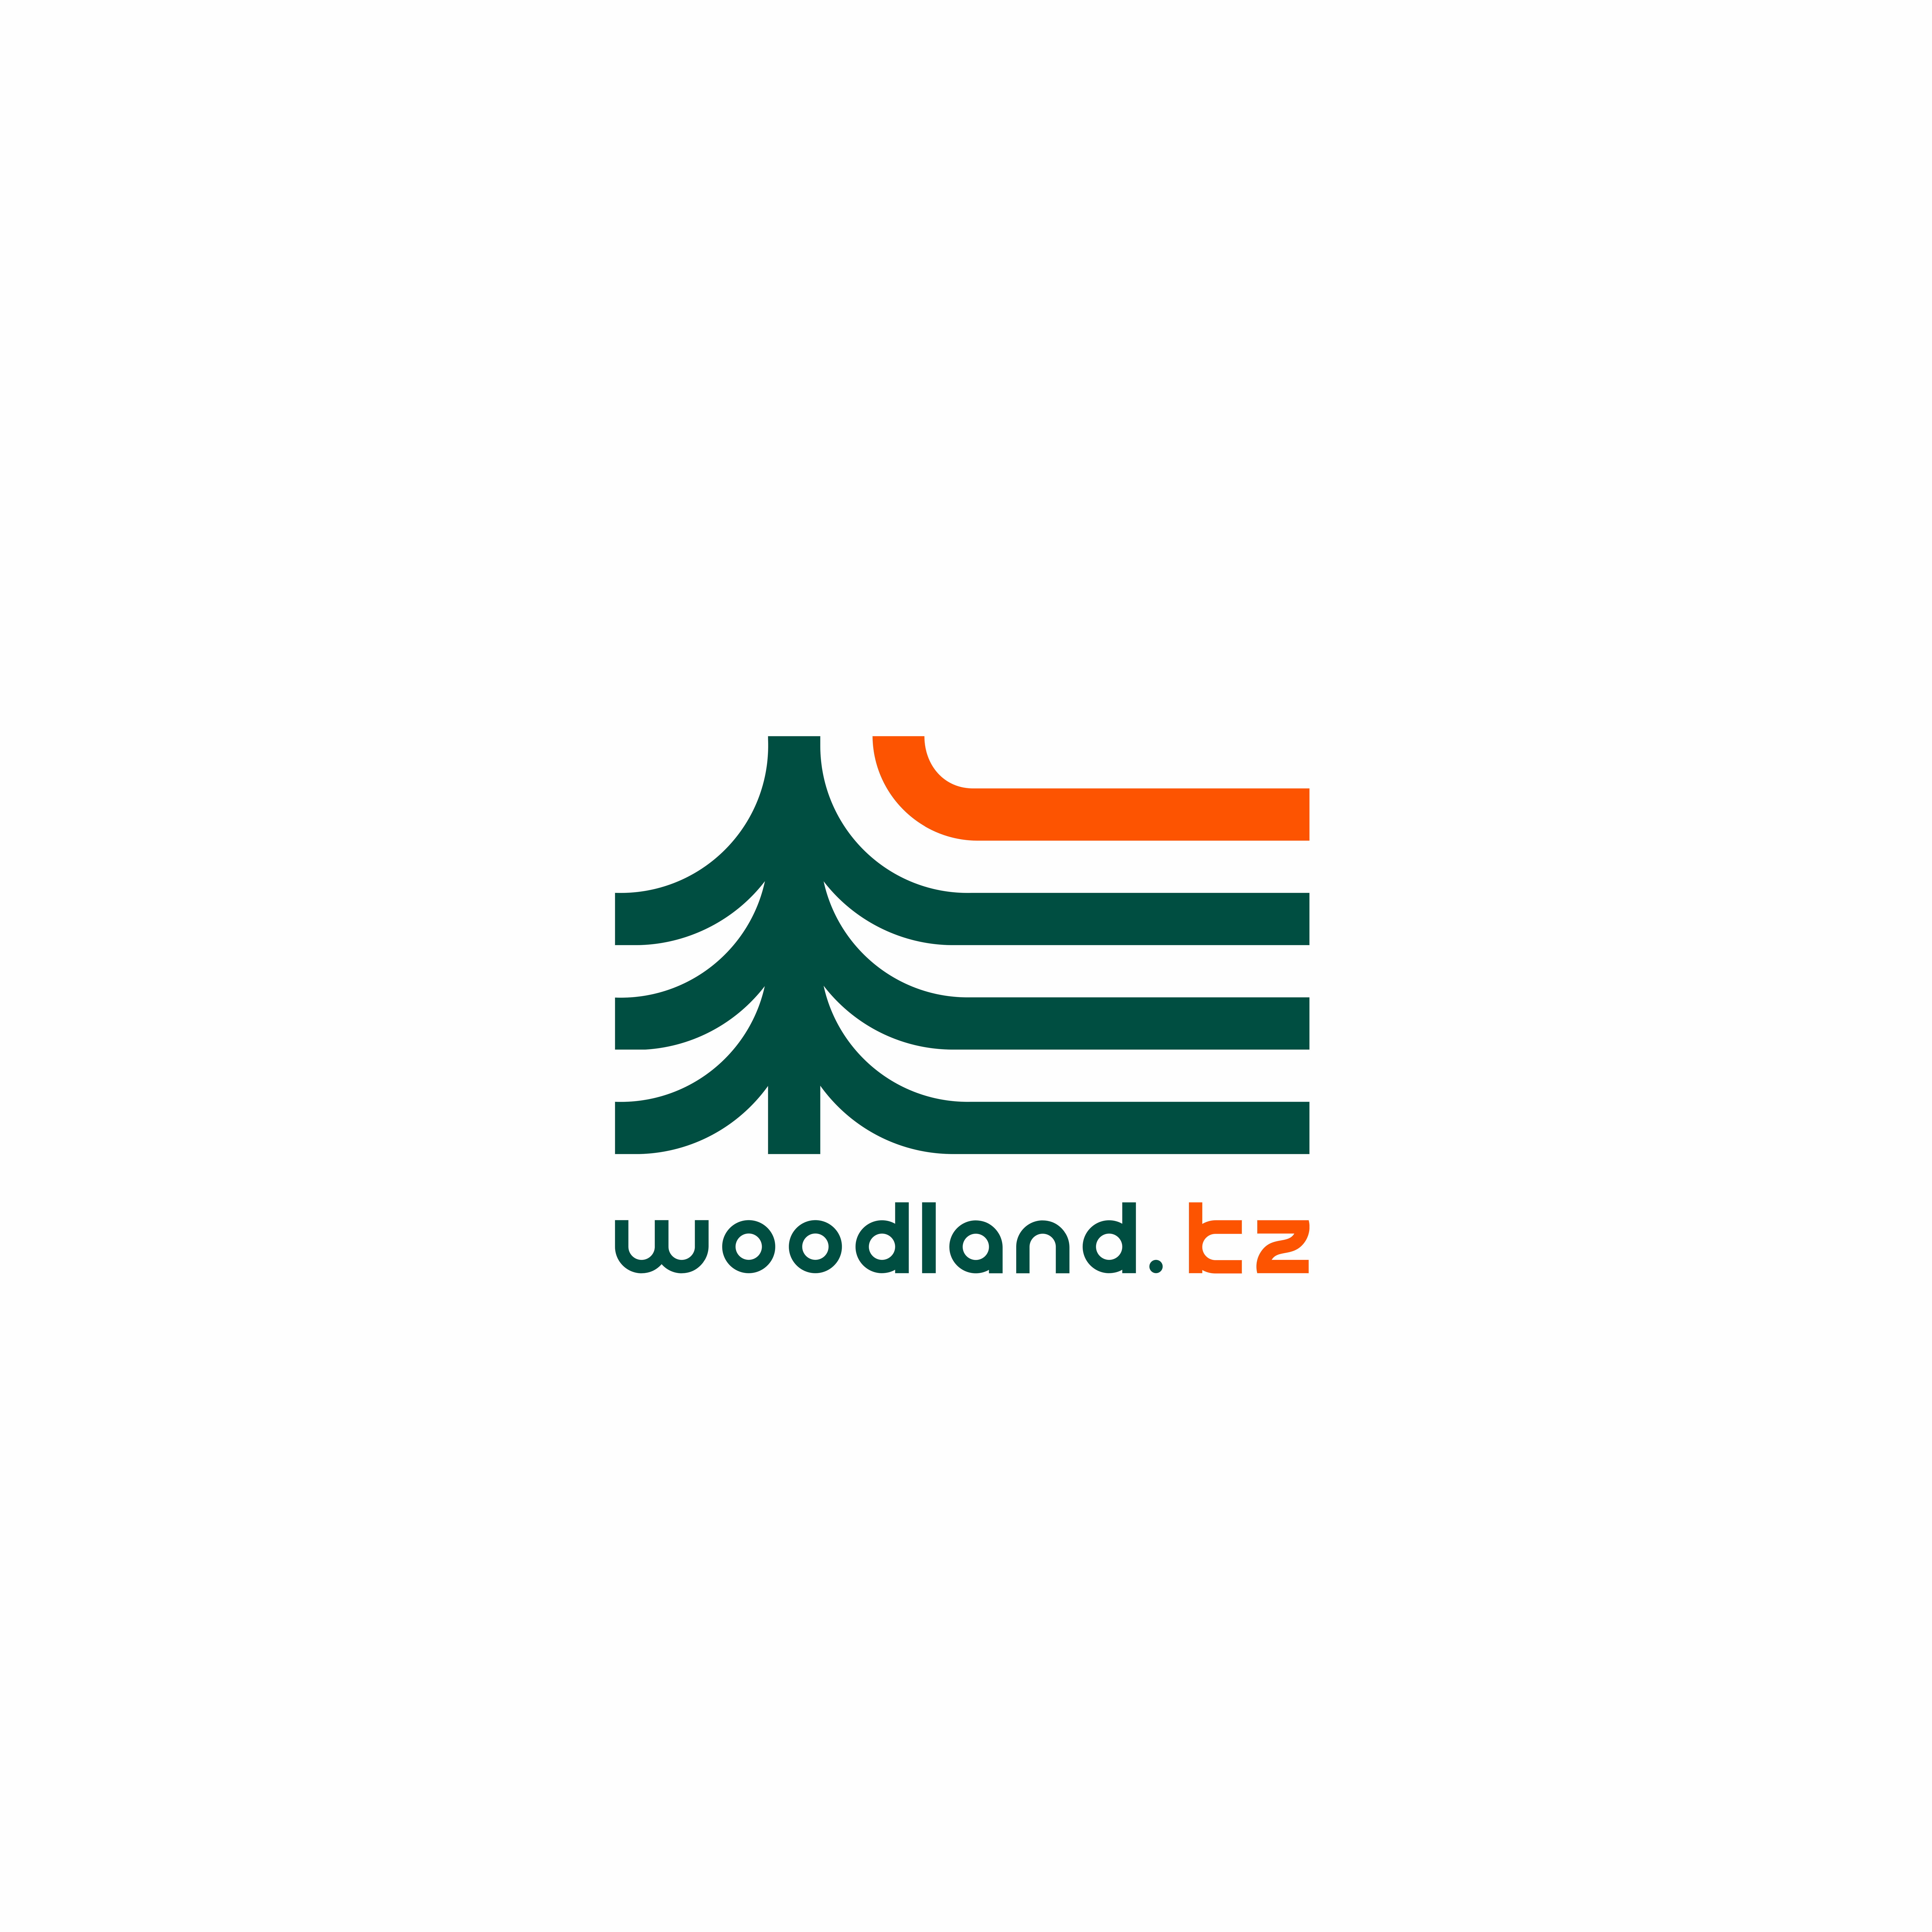 woodland.kz